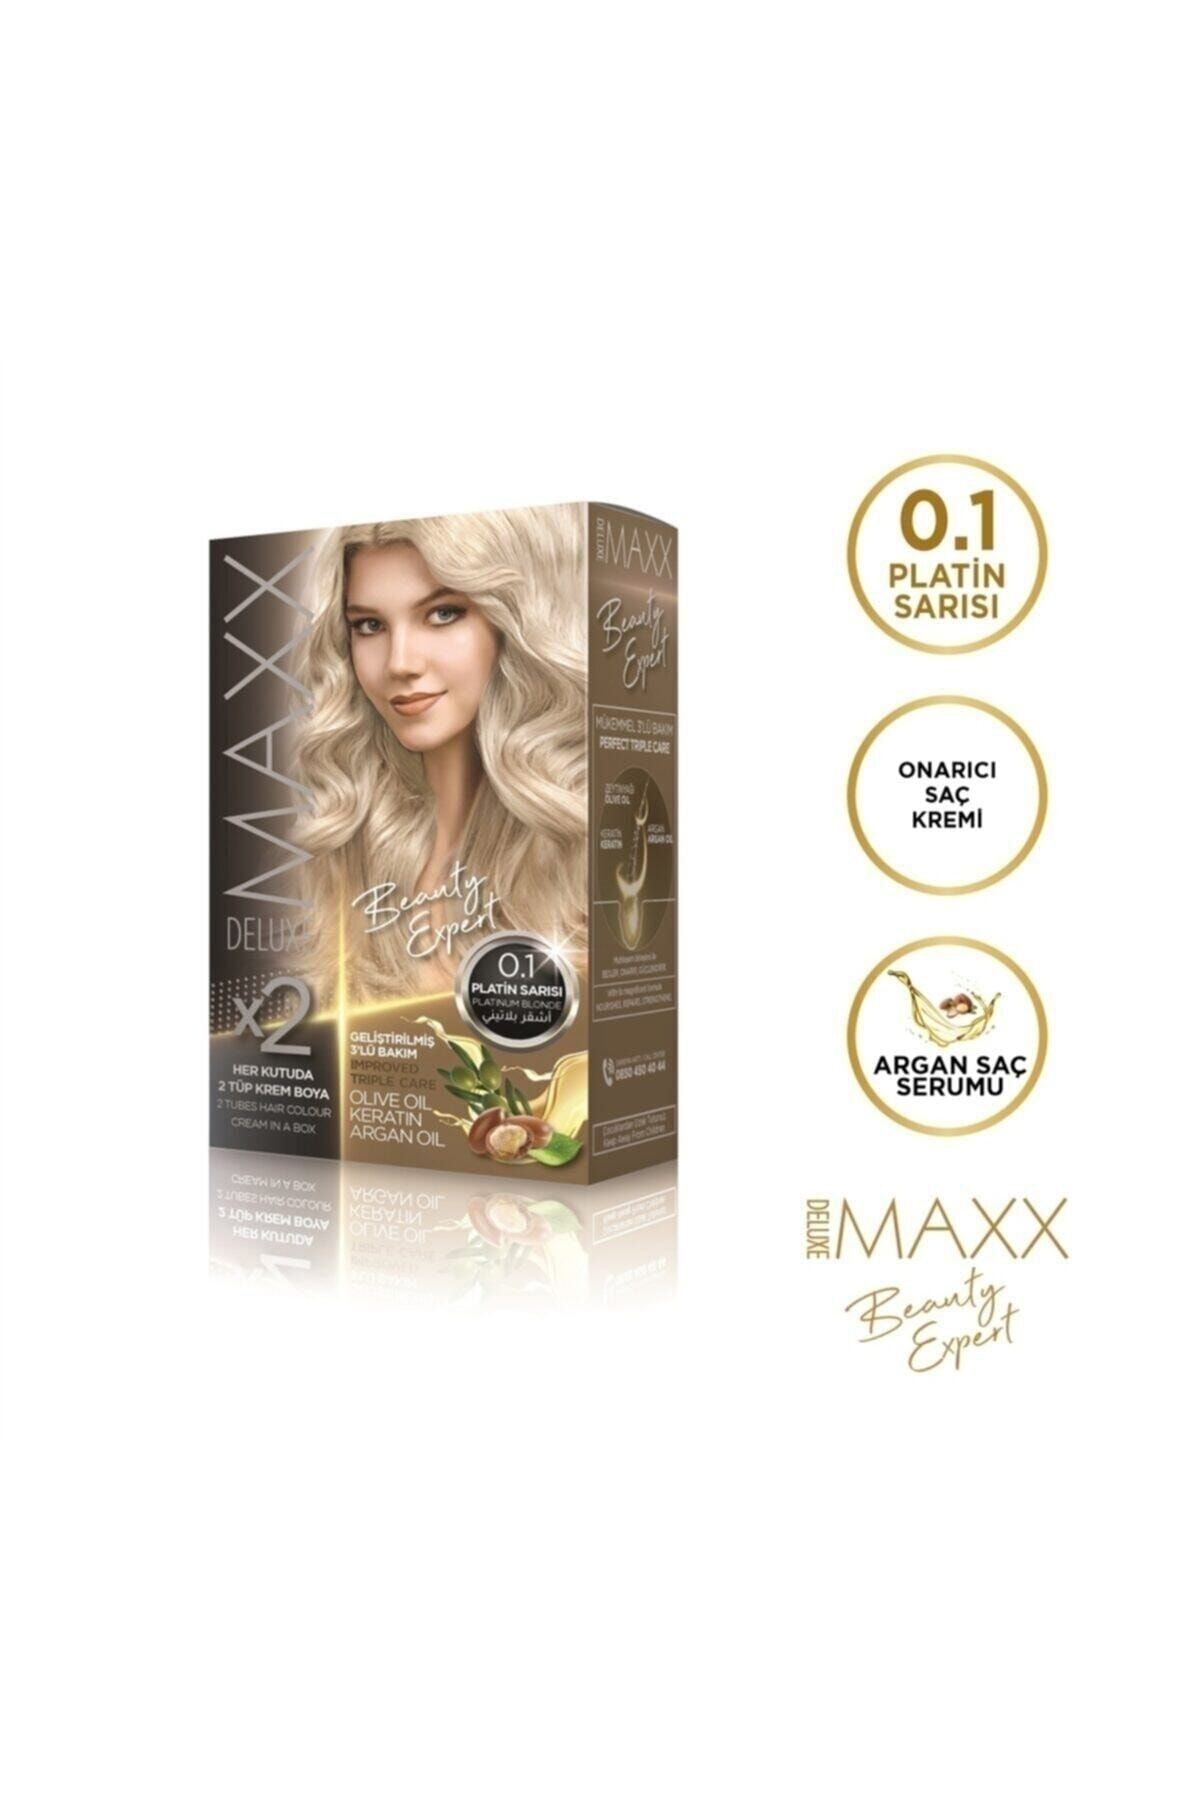 MAXX DELUXE Maxx Beauty Expert 0.1 Platin Sarısı Boya